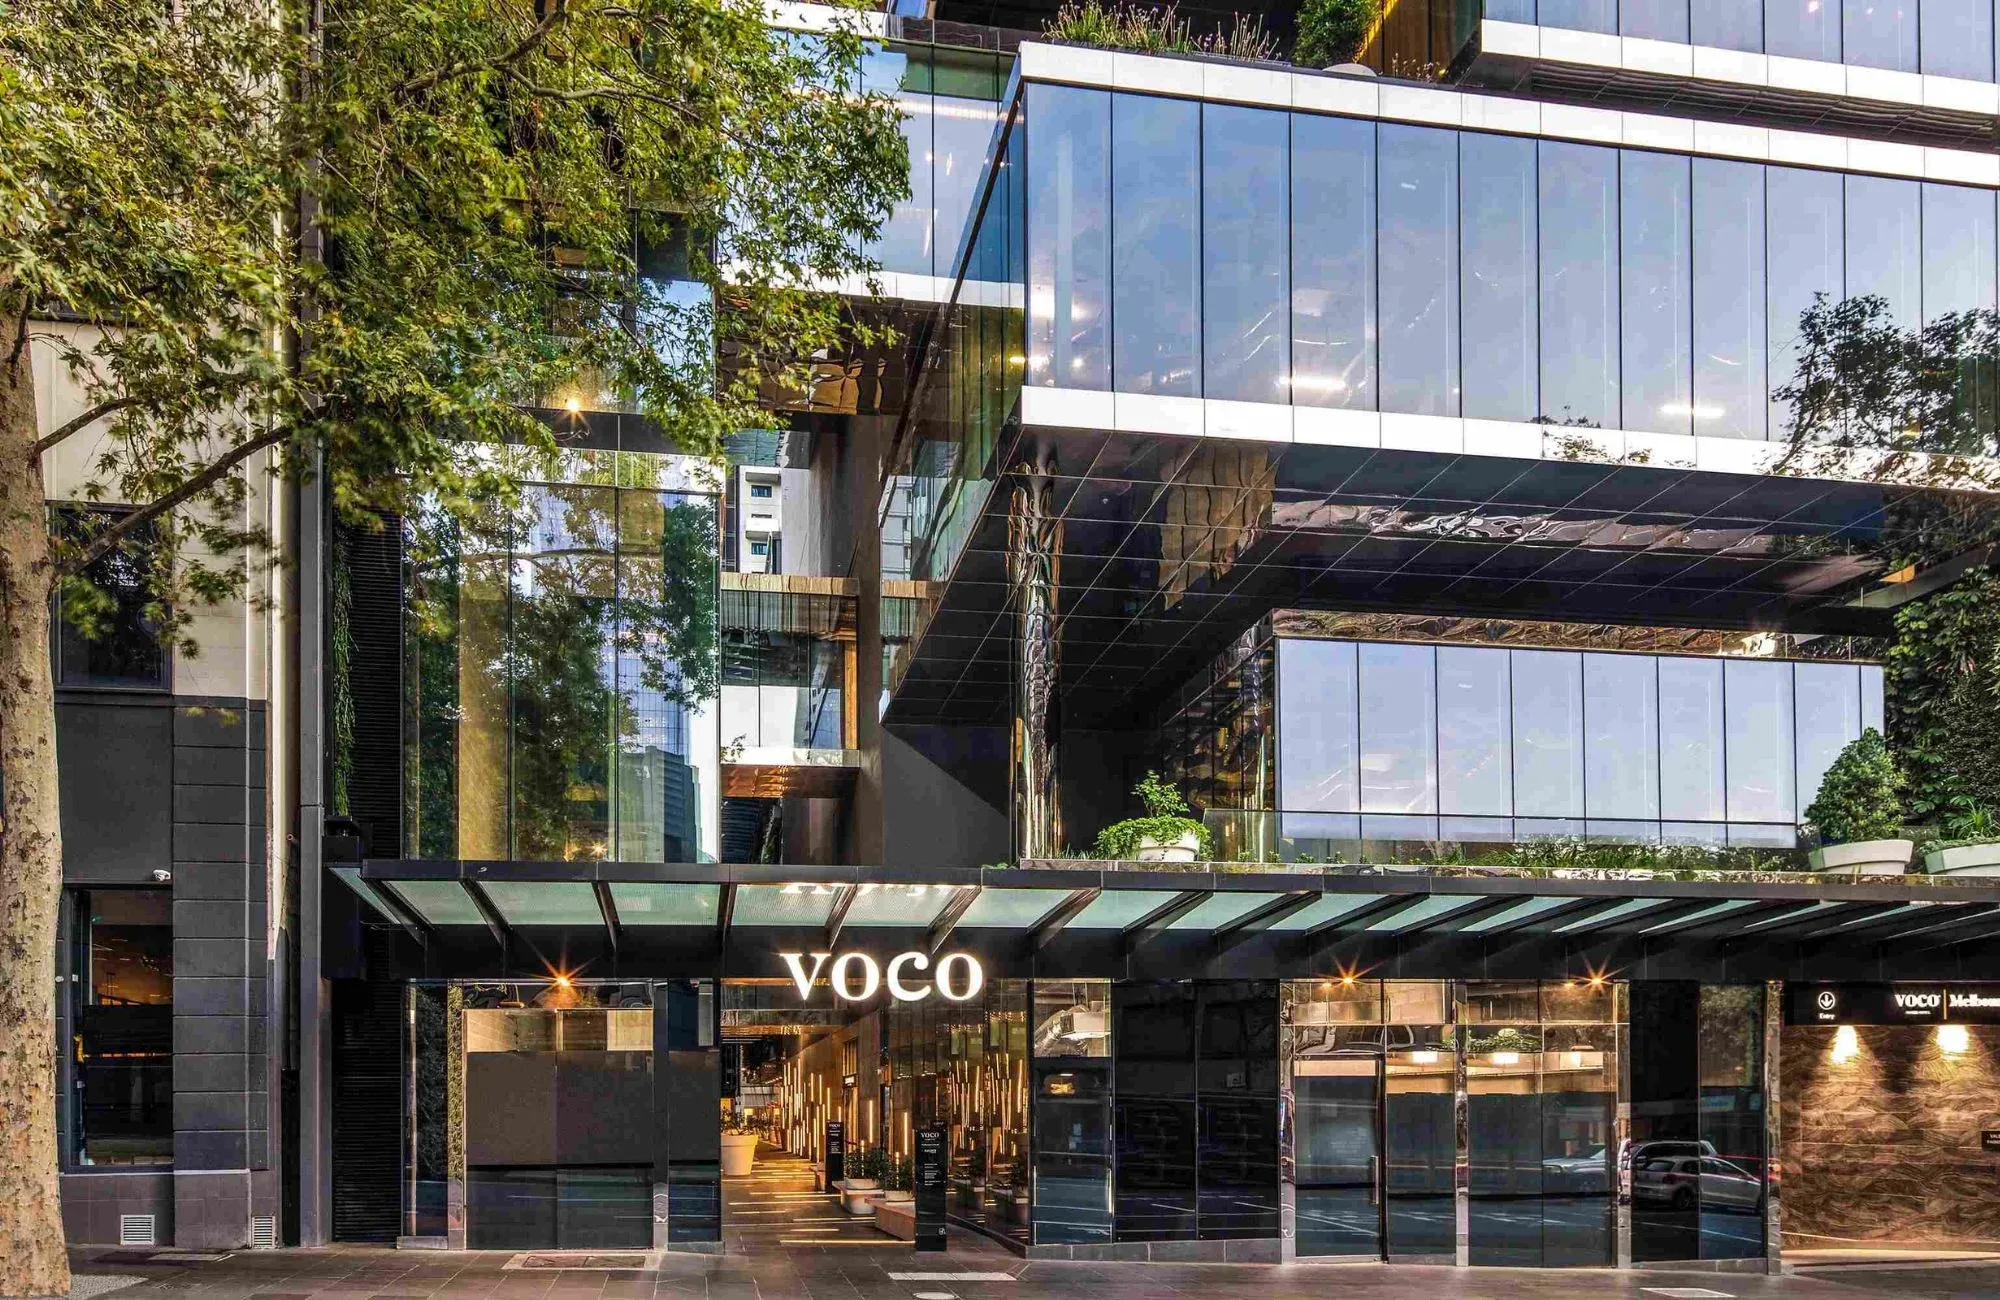 Voco Melbourne Central by IHG Hotels & Resorts. Voco facade